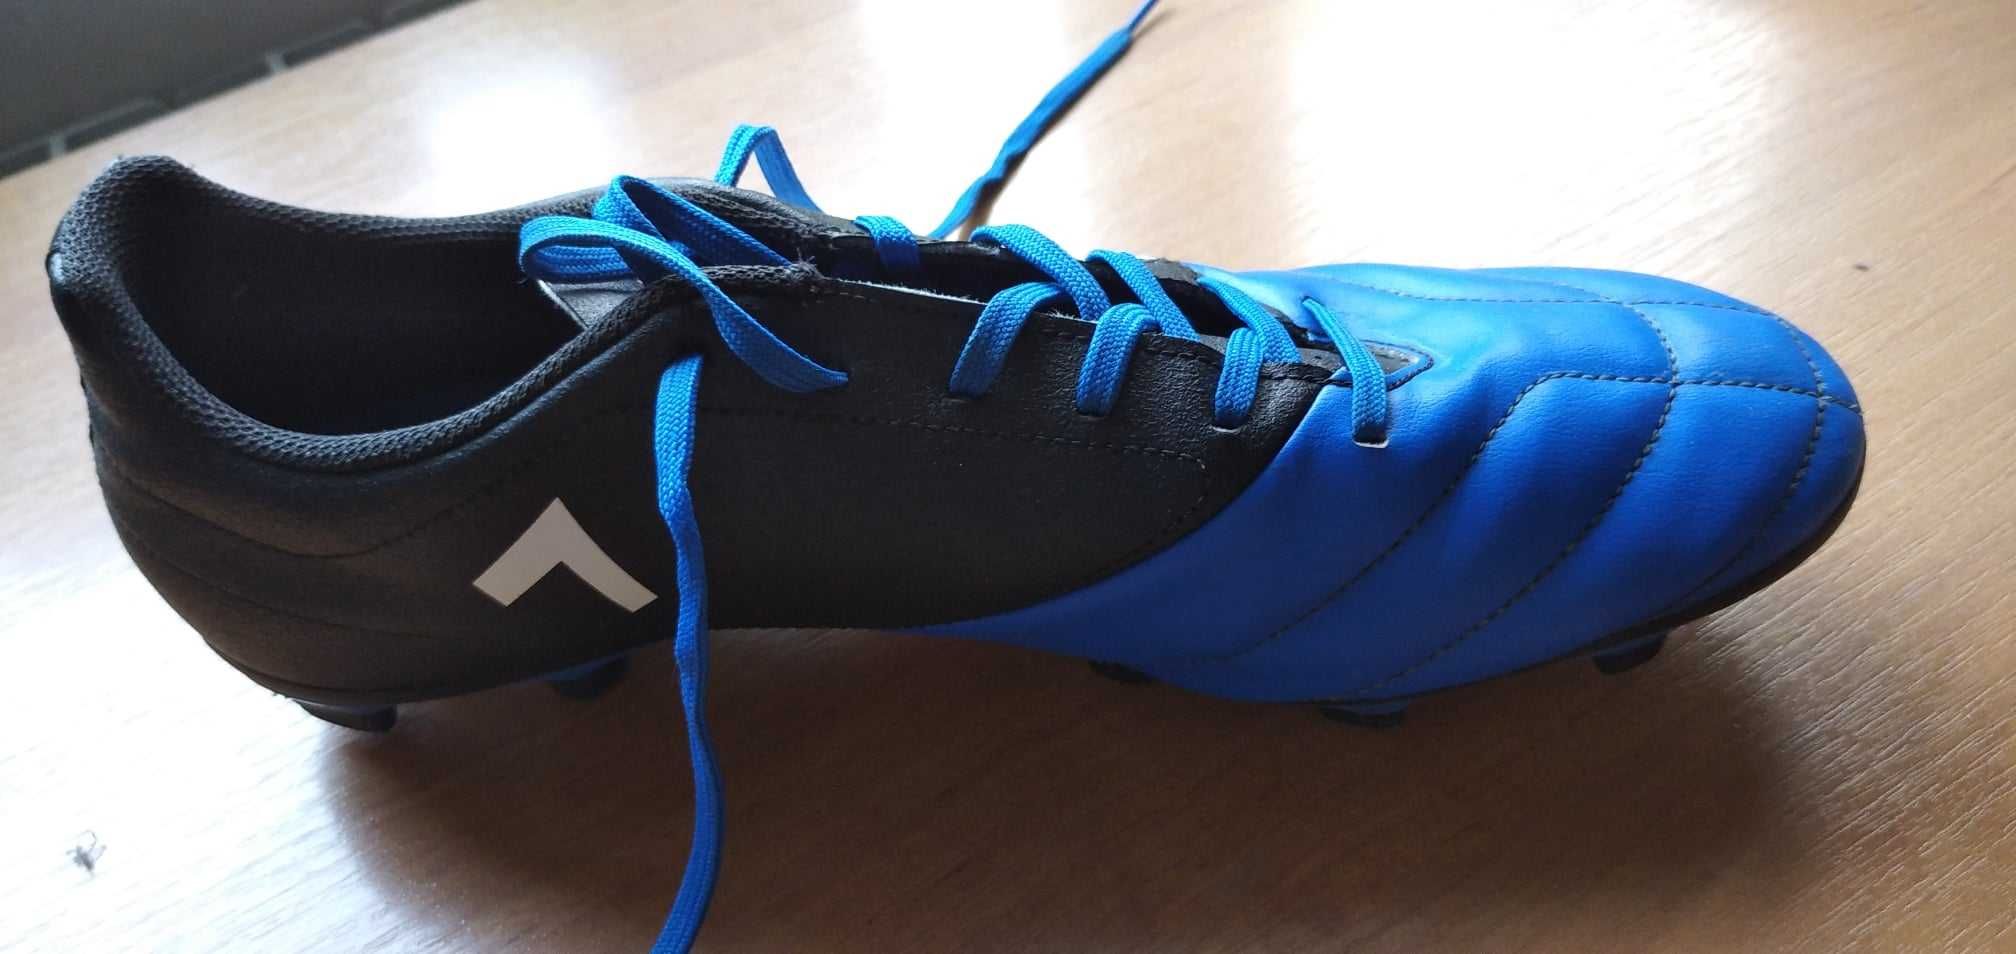 Adidas Buty piłkarskie ACE 17.4 FxG Jr Czarno-niebieskie